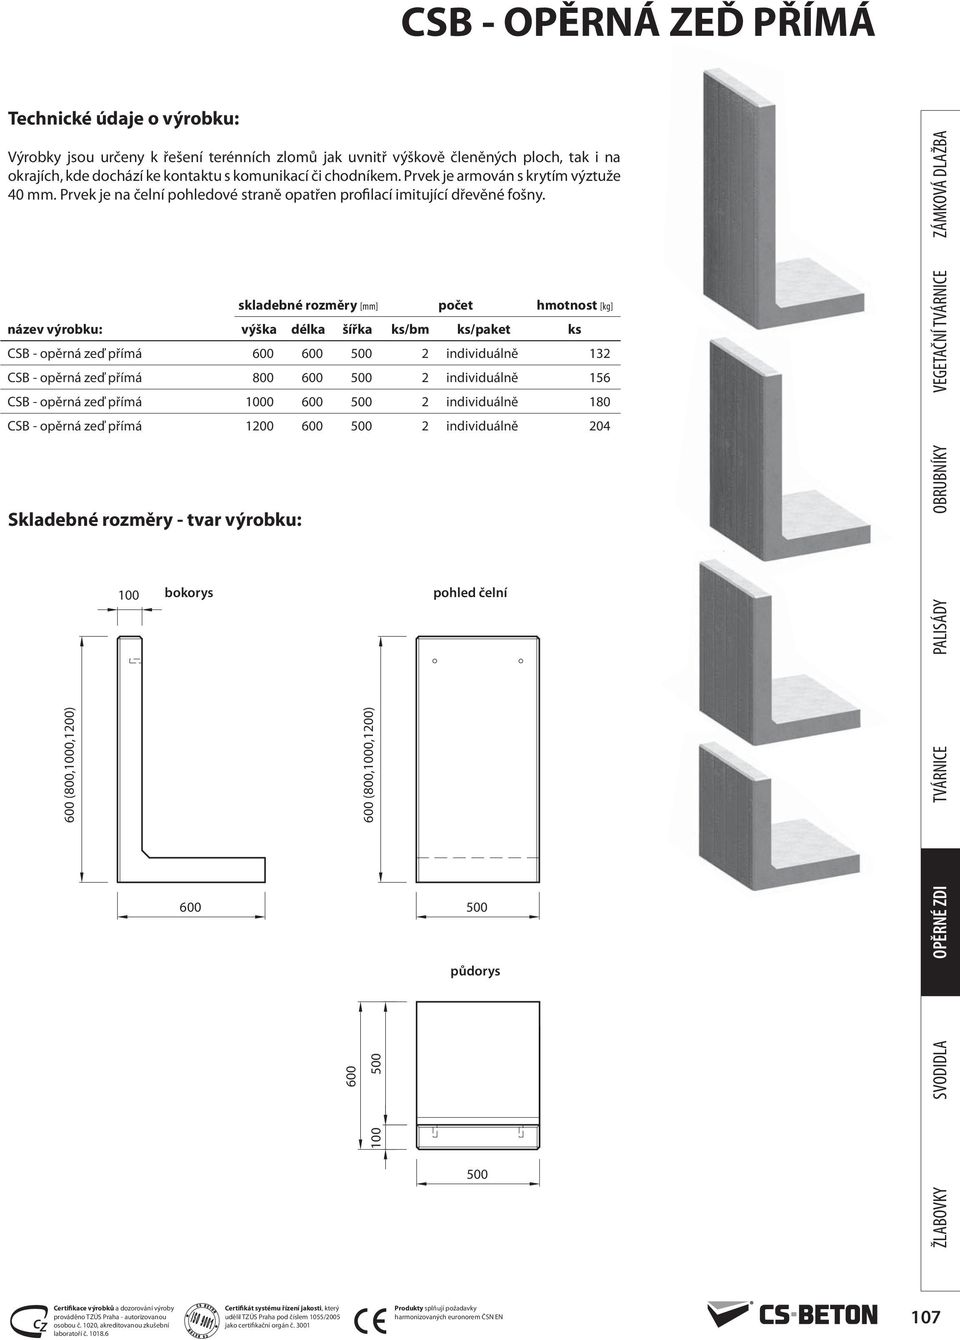 skladebné rozměry [mm] počet hmotnost [kg] název výrobku: výška délka šířka ks/bm ks/paket ks CSB - opěrná zeď přímá 2 individuálně 132 CSB - opěrná zeď přímá 800 2